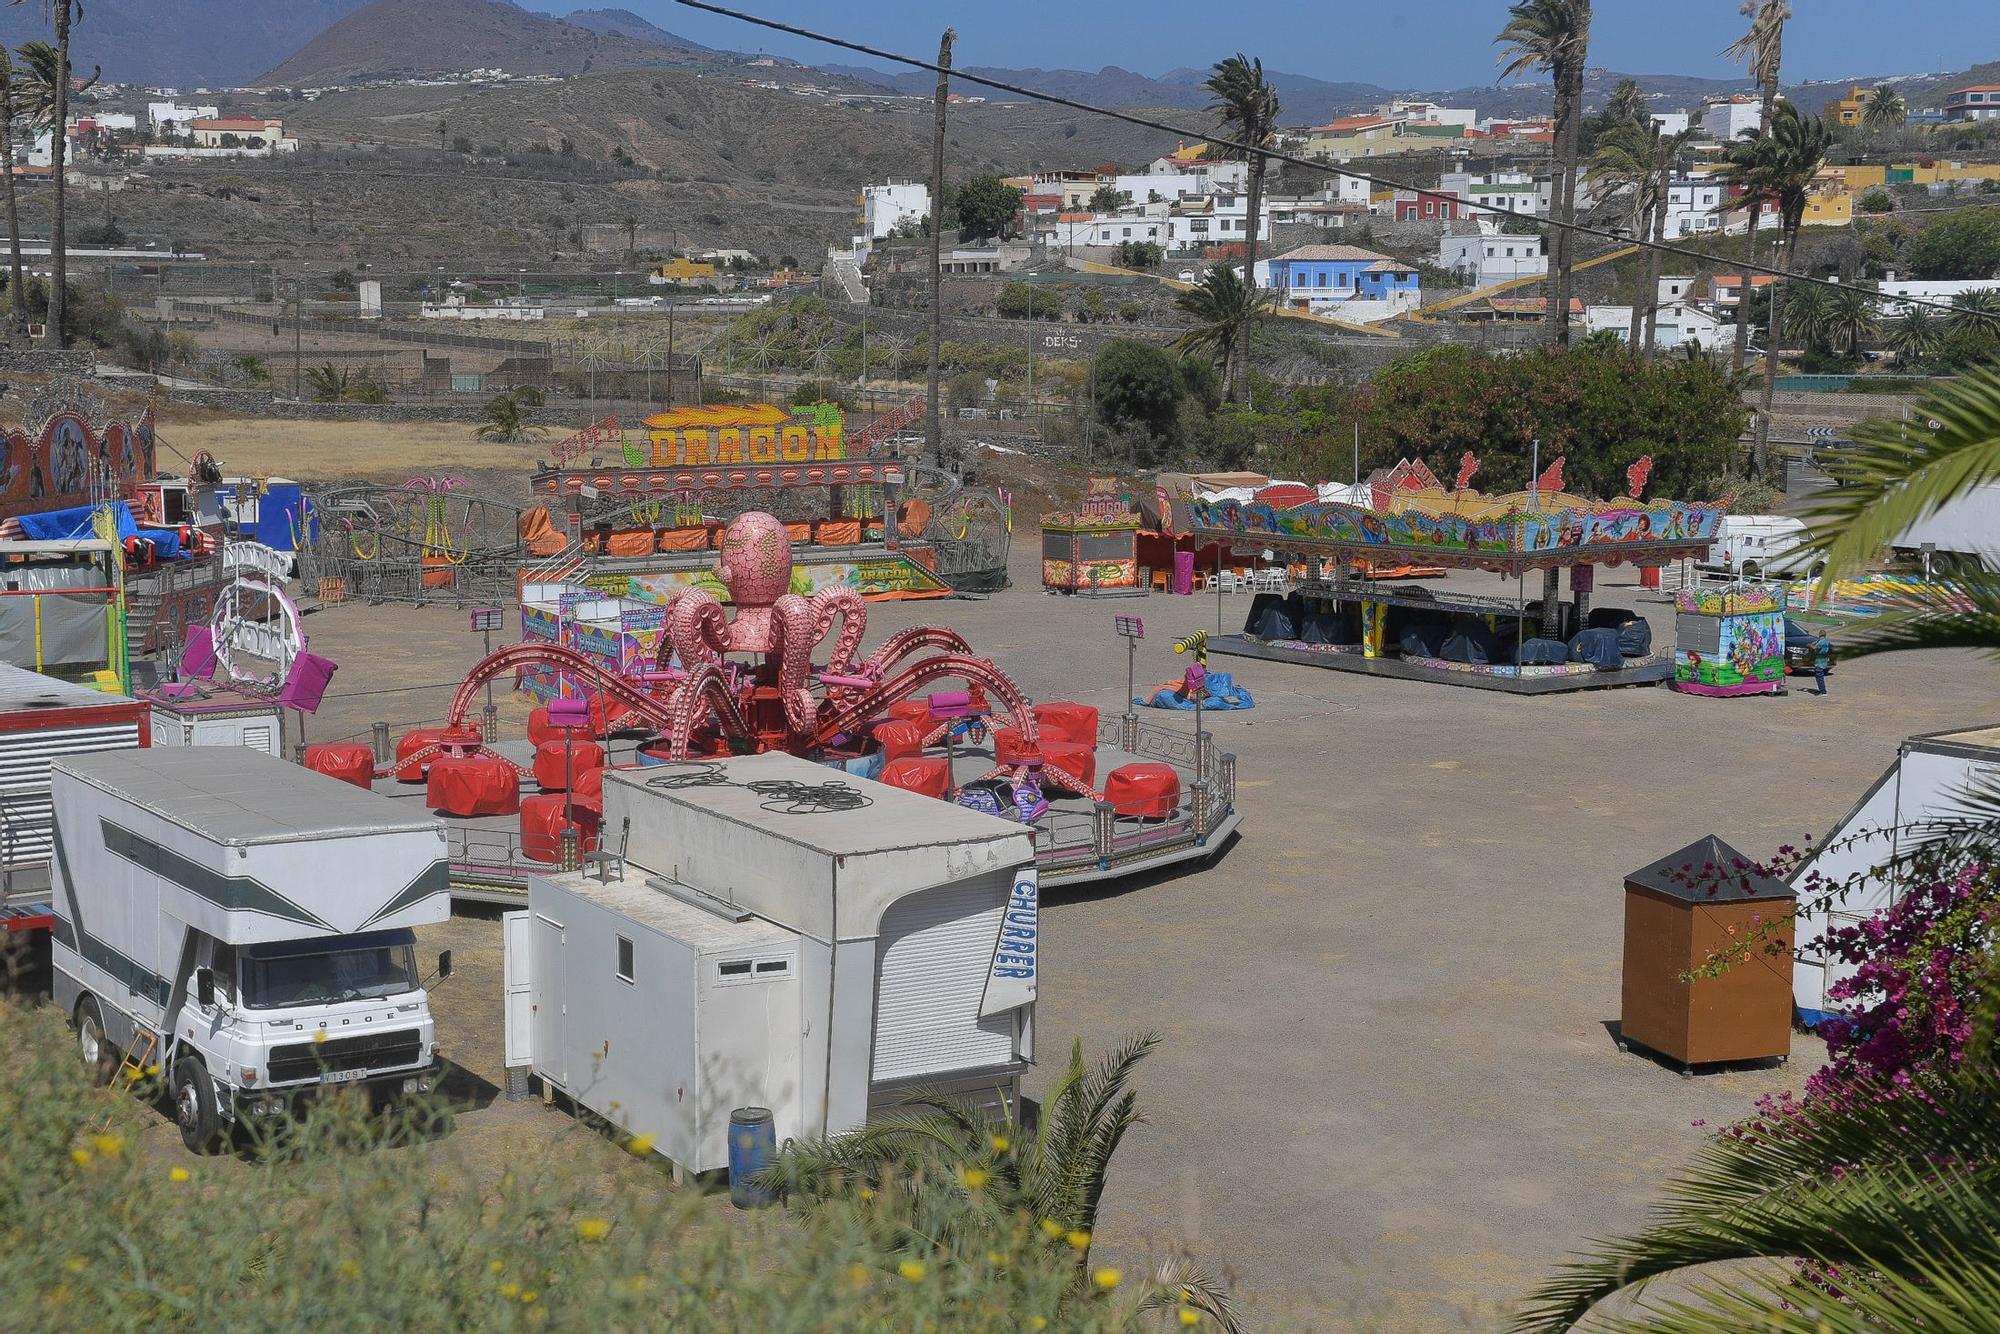 Atracciones en la zona del recinto ferial por las Fiestas de San Juan en Telde.